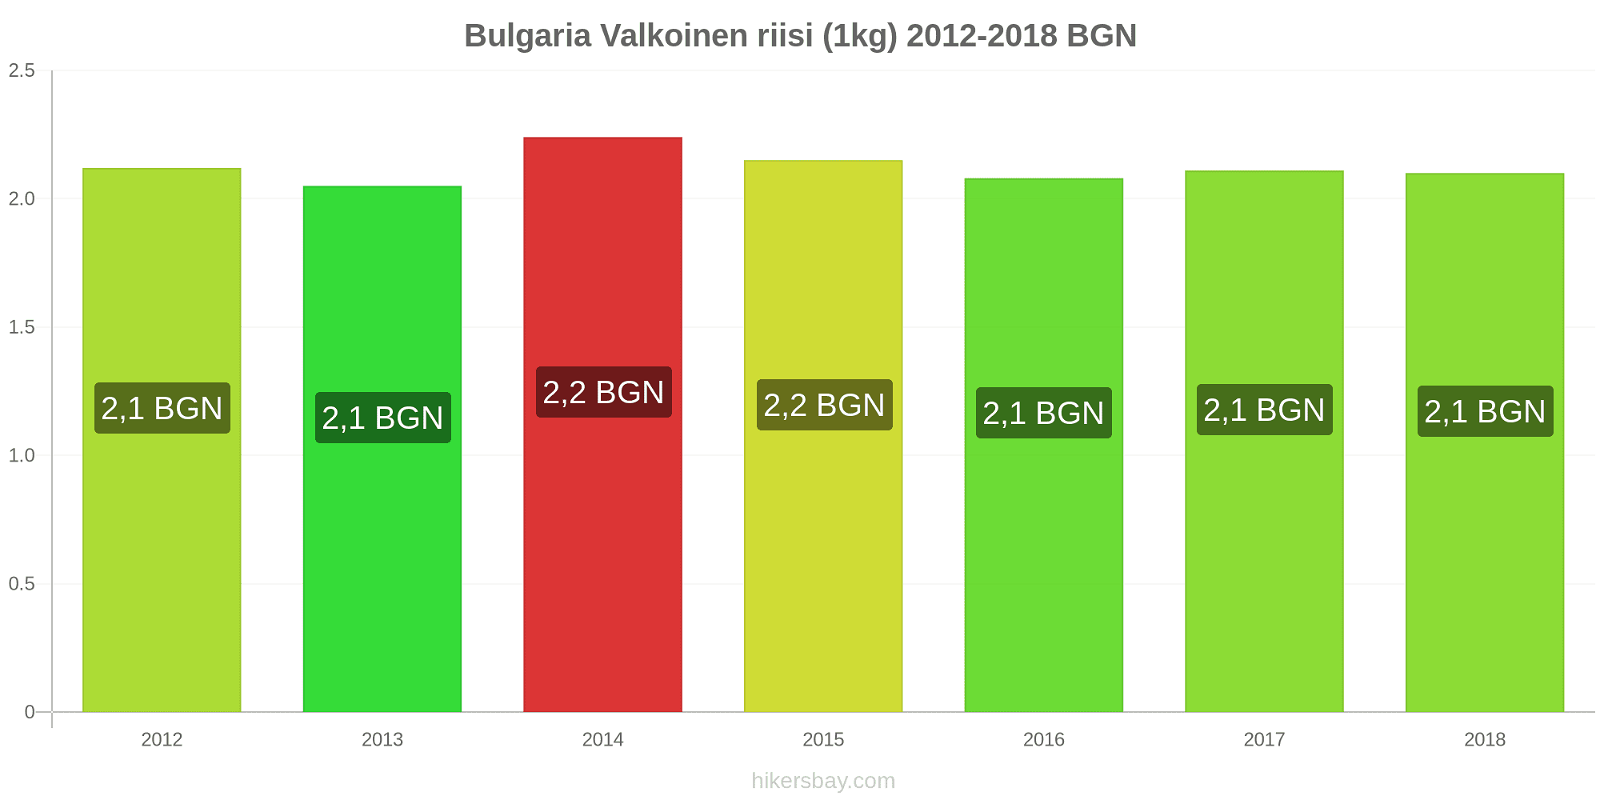 Bulgaria hintojen muutokset Valkoinen riisi (1kg) hikersbay.com